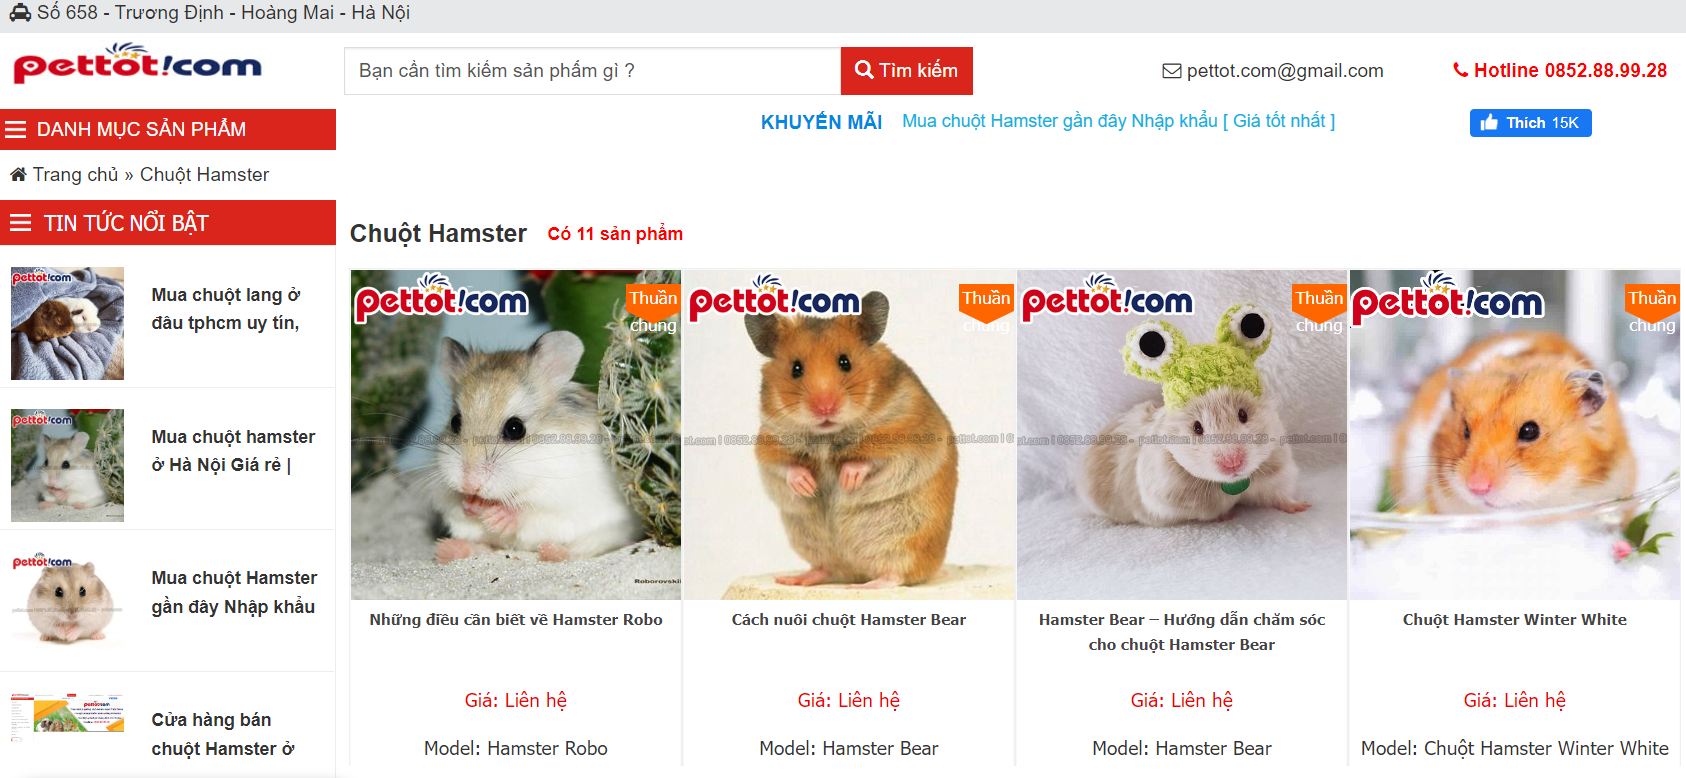 4. Mua hamster bear ở đâu tại Hà Nội, Tp. Hồ Chí Minh thì uy tín?